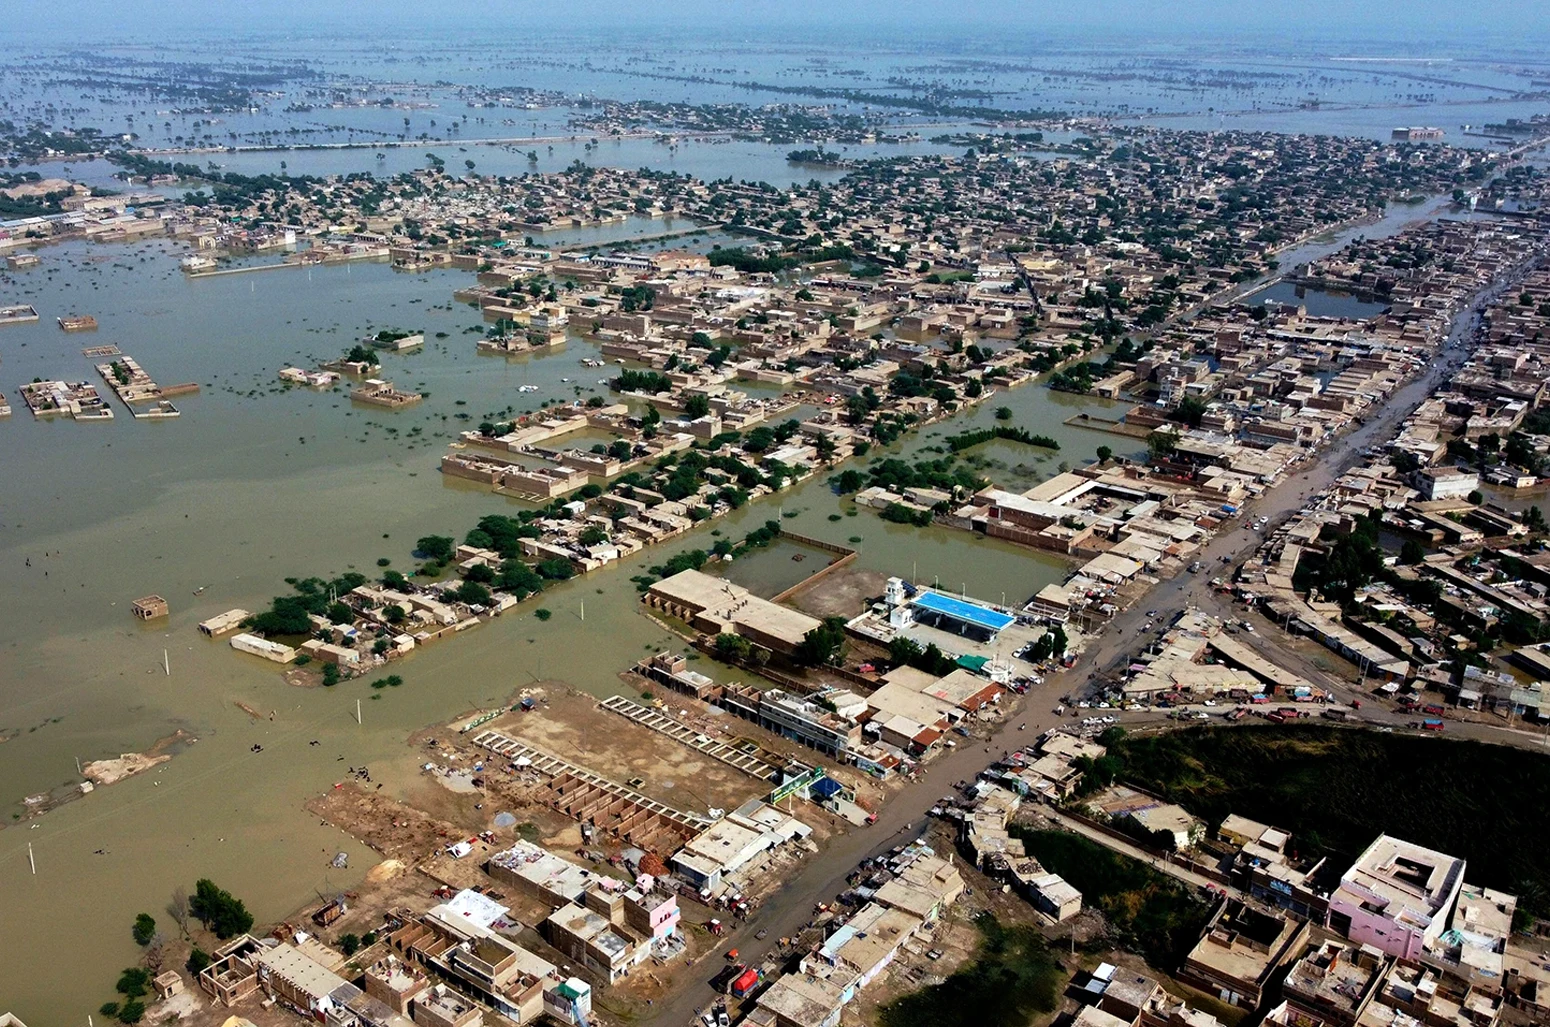 Pakistan'ın güneybatısındaki Belucistan eyaletinin bir bölgesi olan Sohbat Pur şehrinde 30 Ağustos 2022'de evler sel sularıyla çevrili.